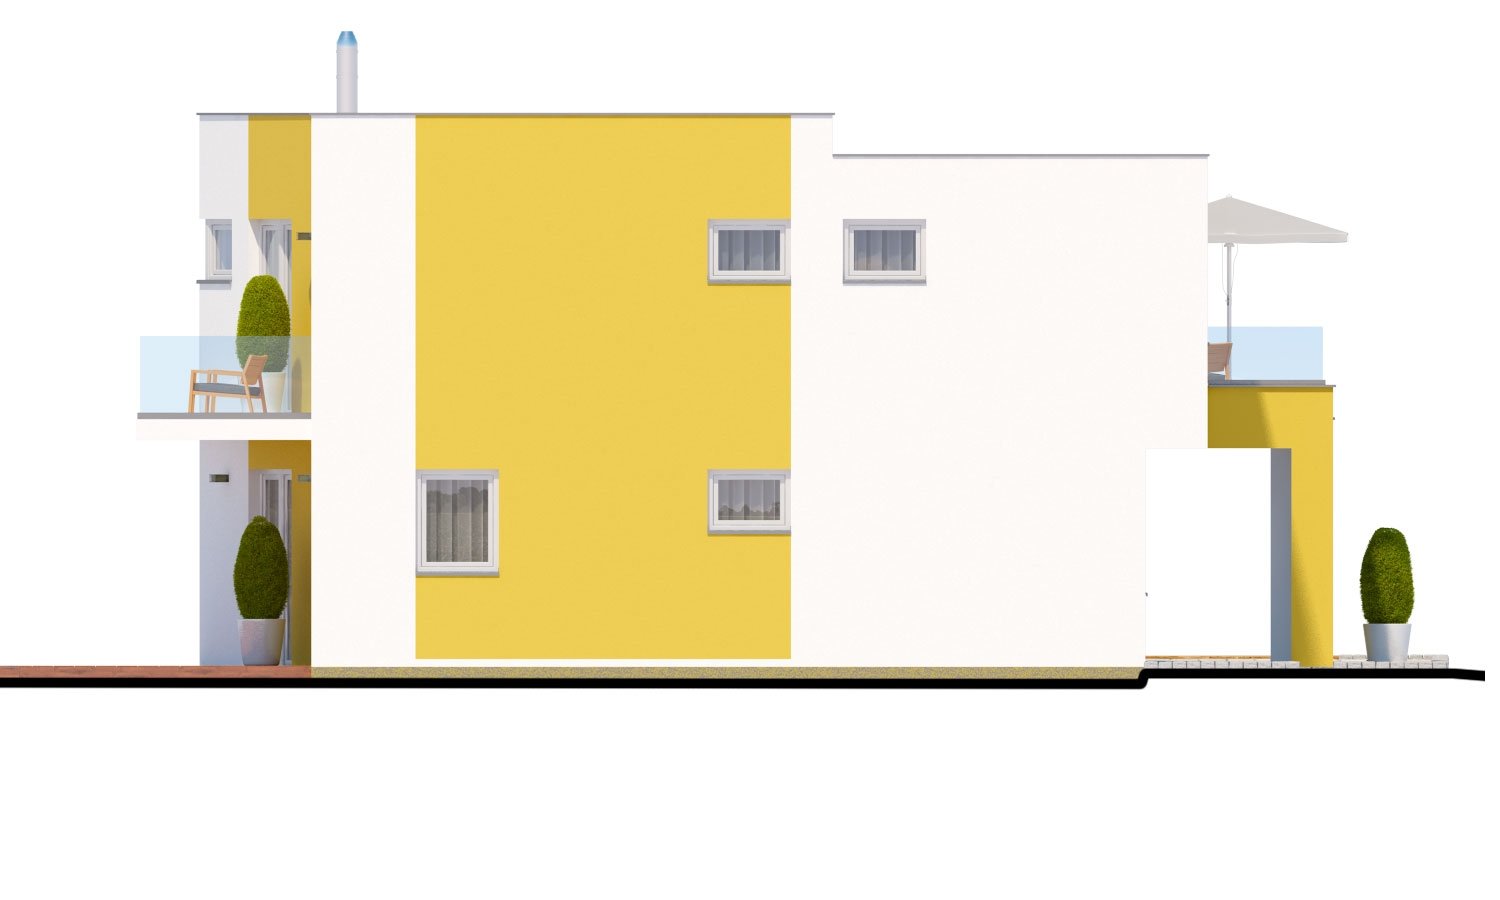 Zrkadlový pohľad 3. - Atypický projekt domu s krytým stáním pro dvě auta a pokojem v přízemí.